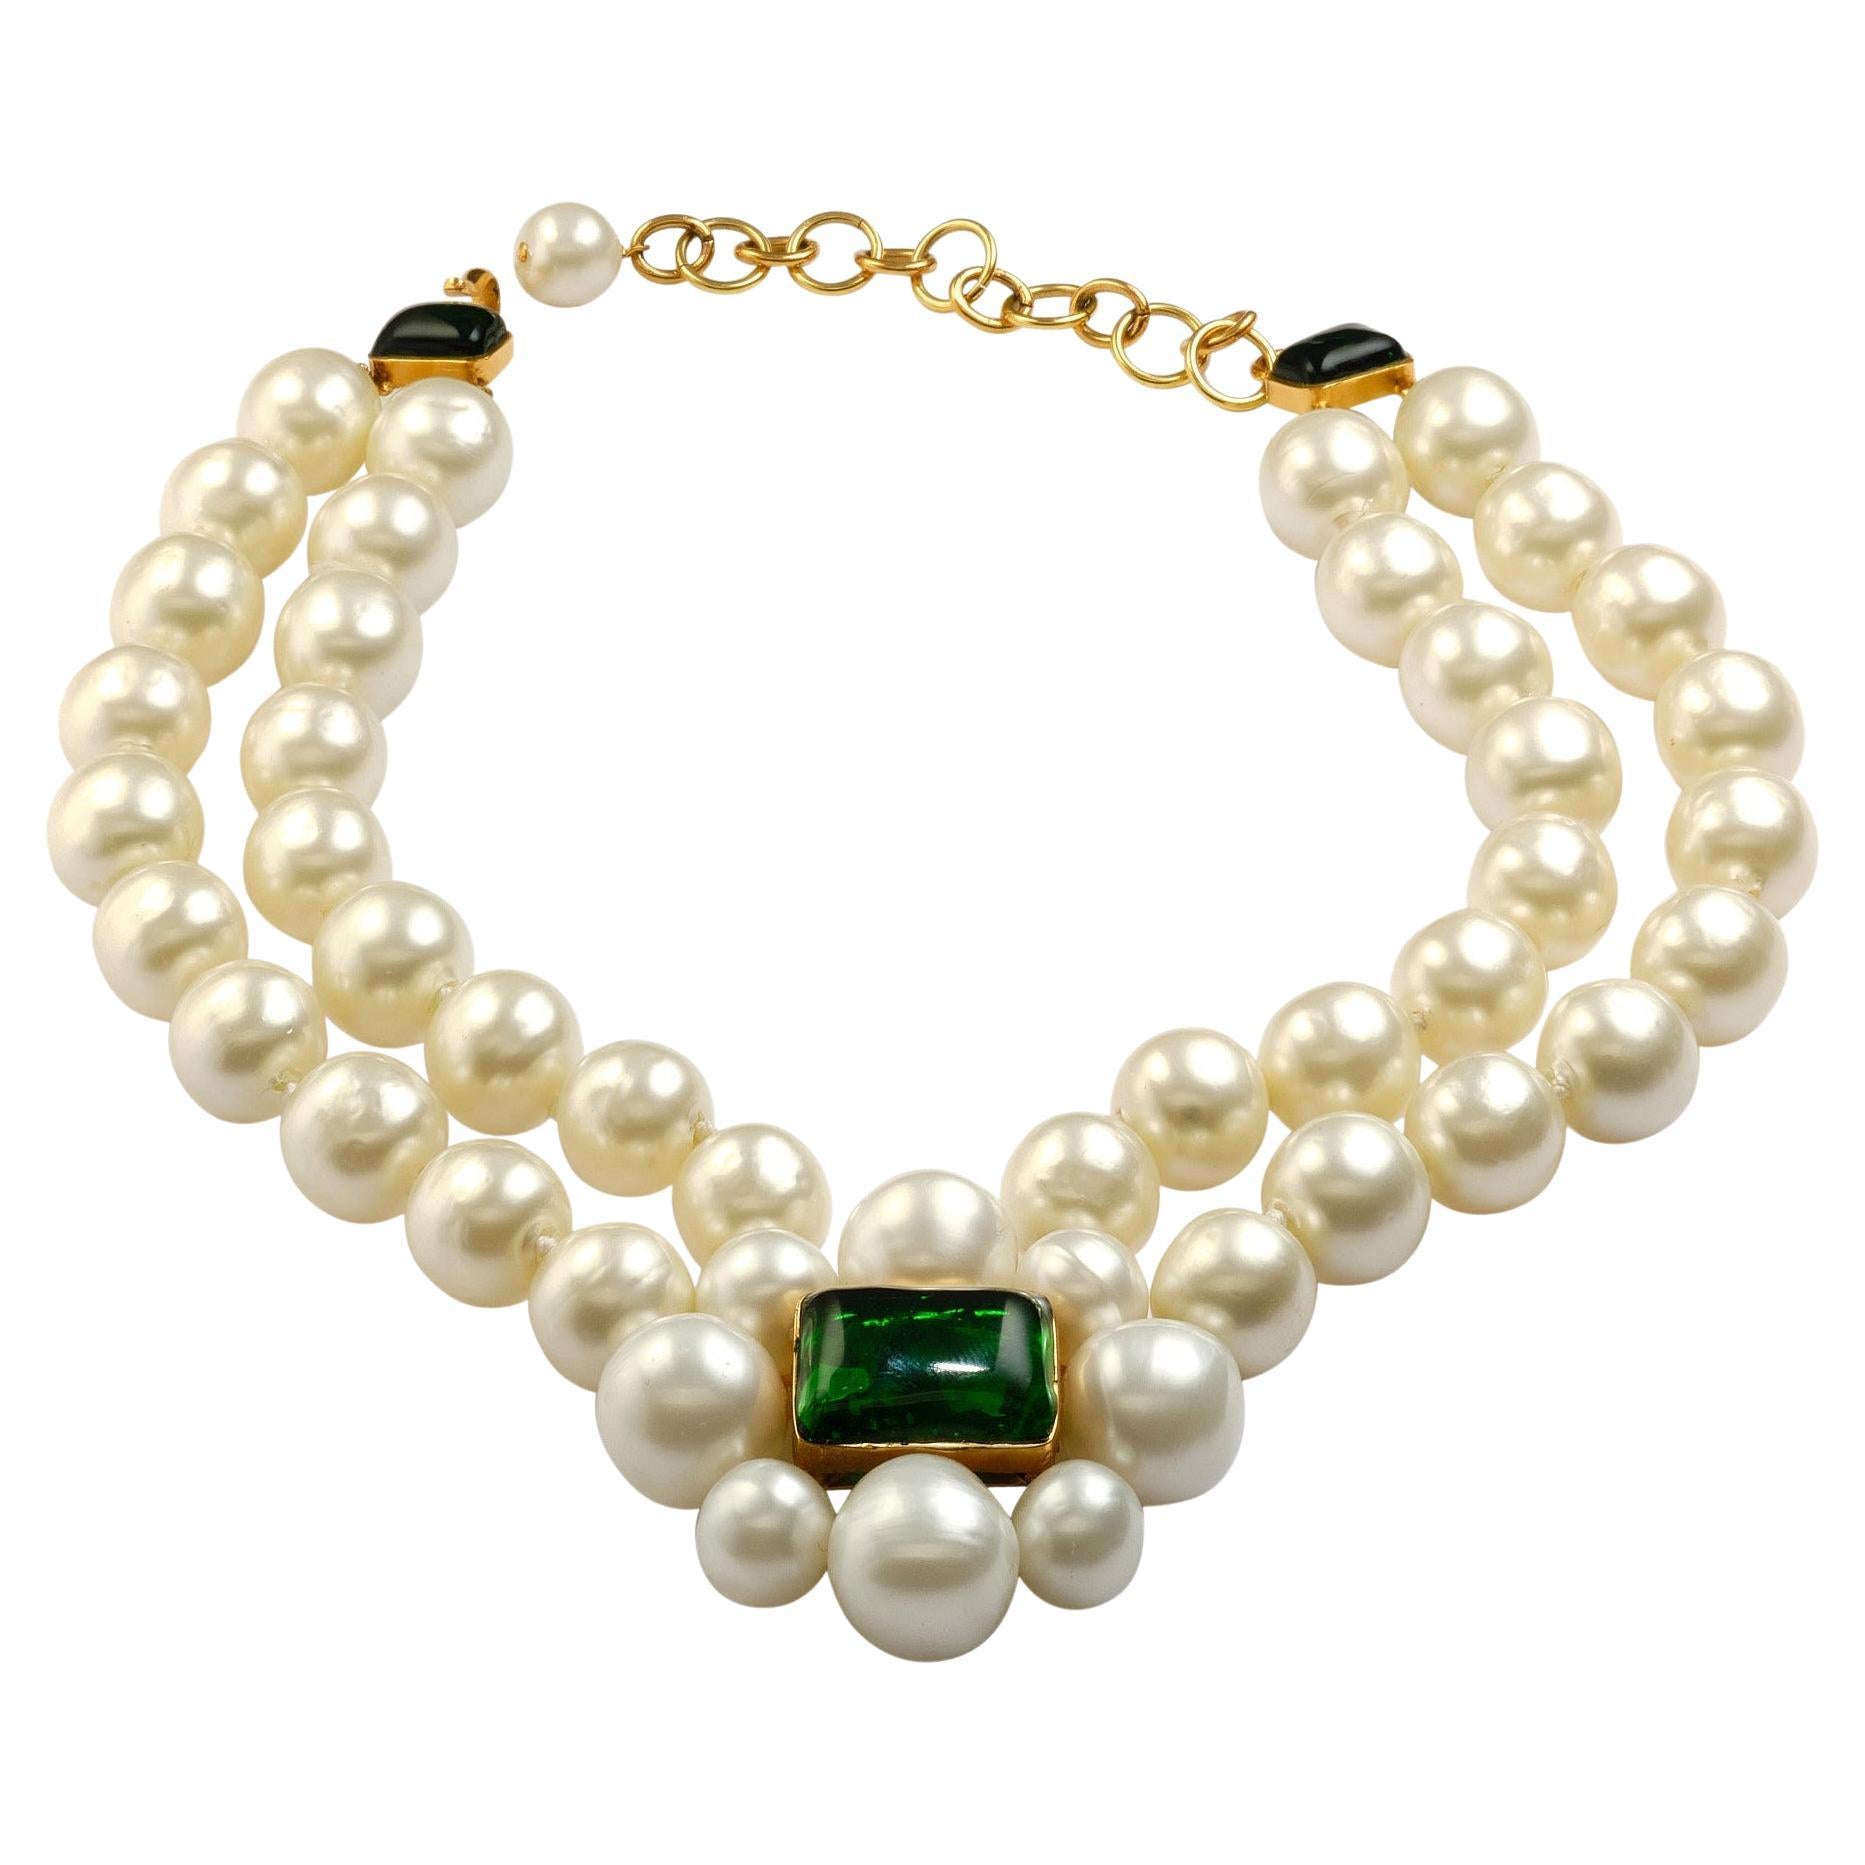 Wunderschöne CHANEL-Halskette  (HERGESTELLT IN FRANKREICH)  mit sehr großen handgeknüpften  Perlen. In der Mitte befindet sich eine Kamelie aus 8 Perlen mit einem grünen Gripoix-Glasstein in der Mitte. Als Verschluss der gleiche Gripoix in grün mit